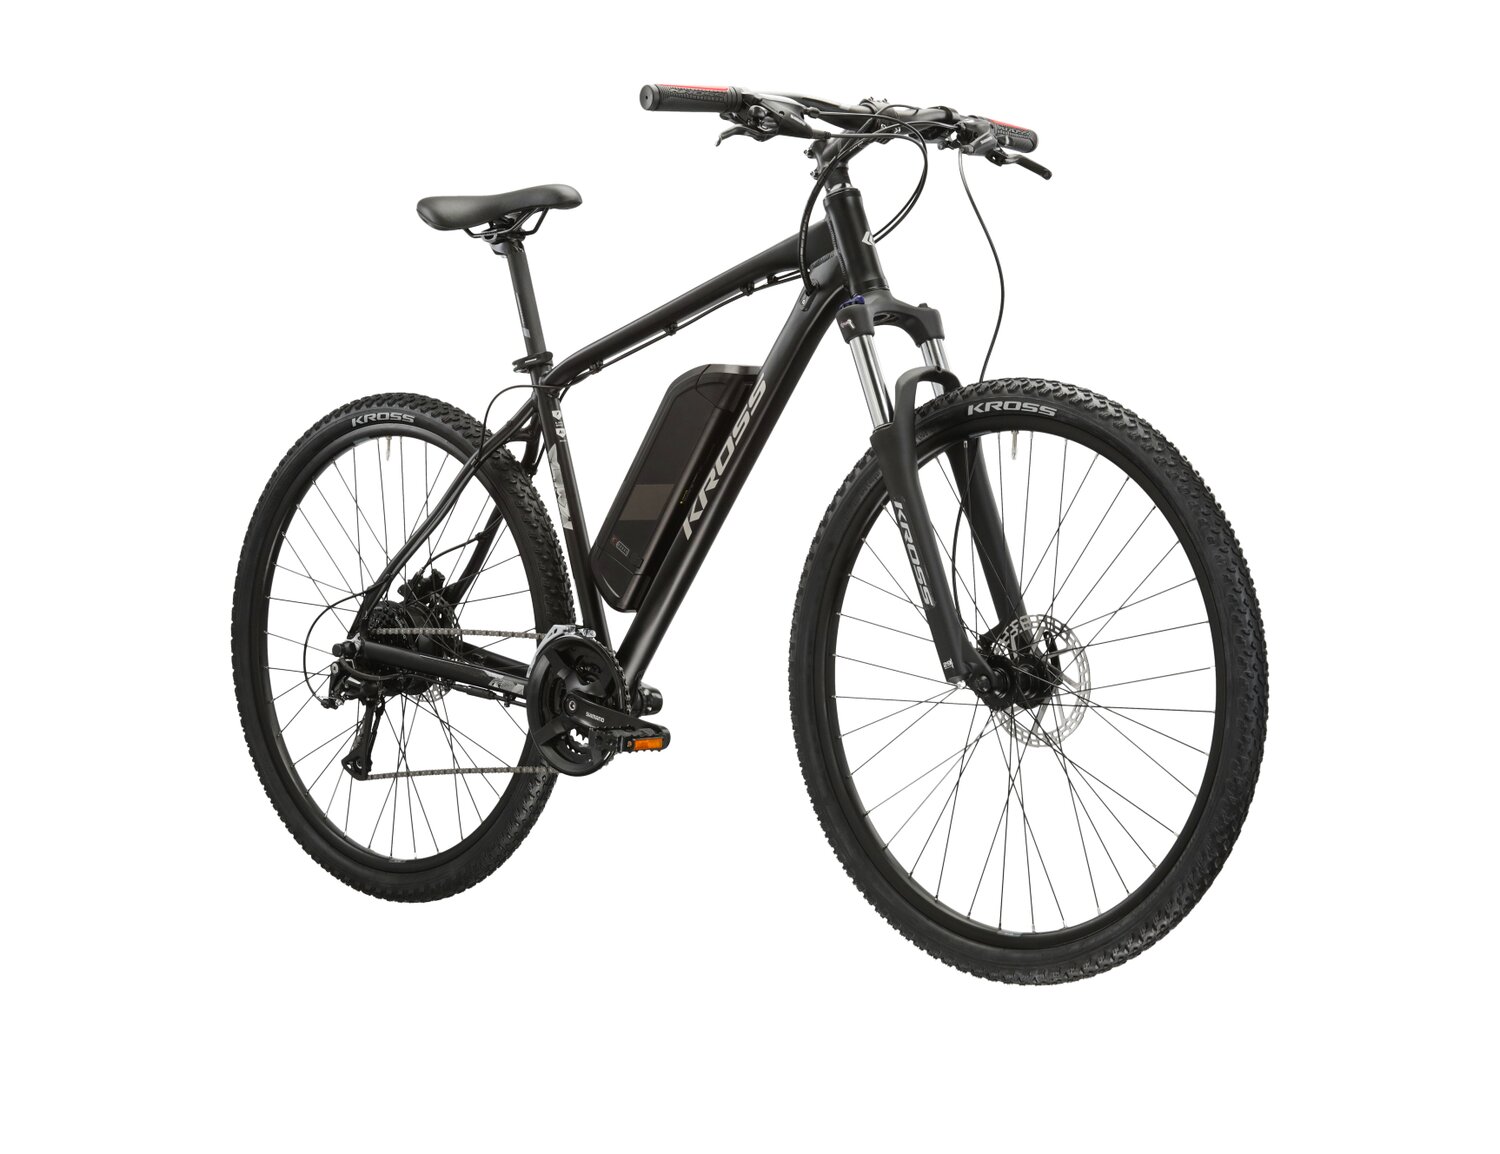  Elektryczny rower górski MTB Kross Berg Boost 1.0 na aluminiowej ramie w kolorze czarnym wyposażony w osprzęt Shimano i silnik Bafang 